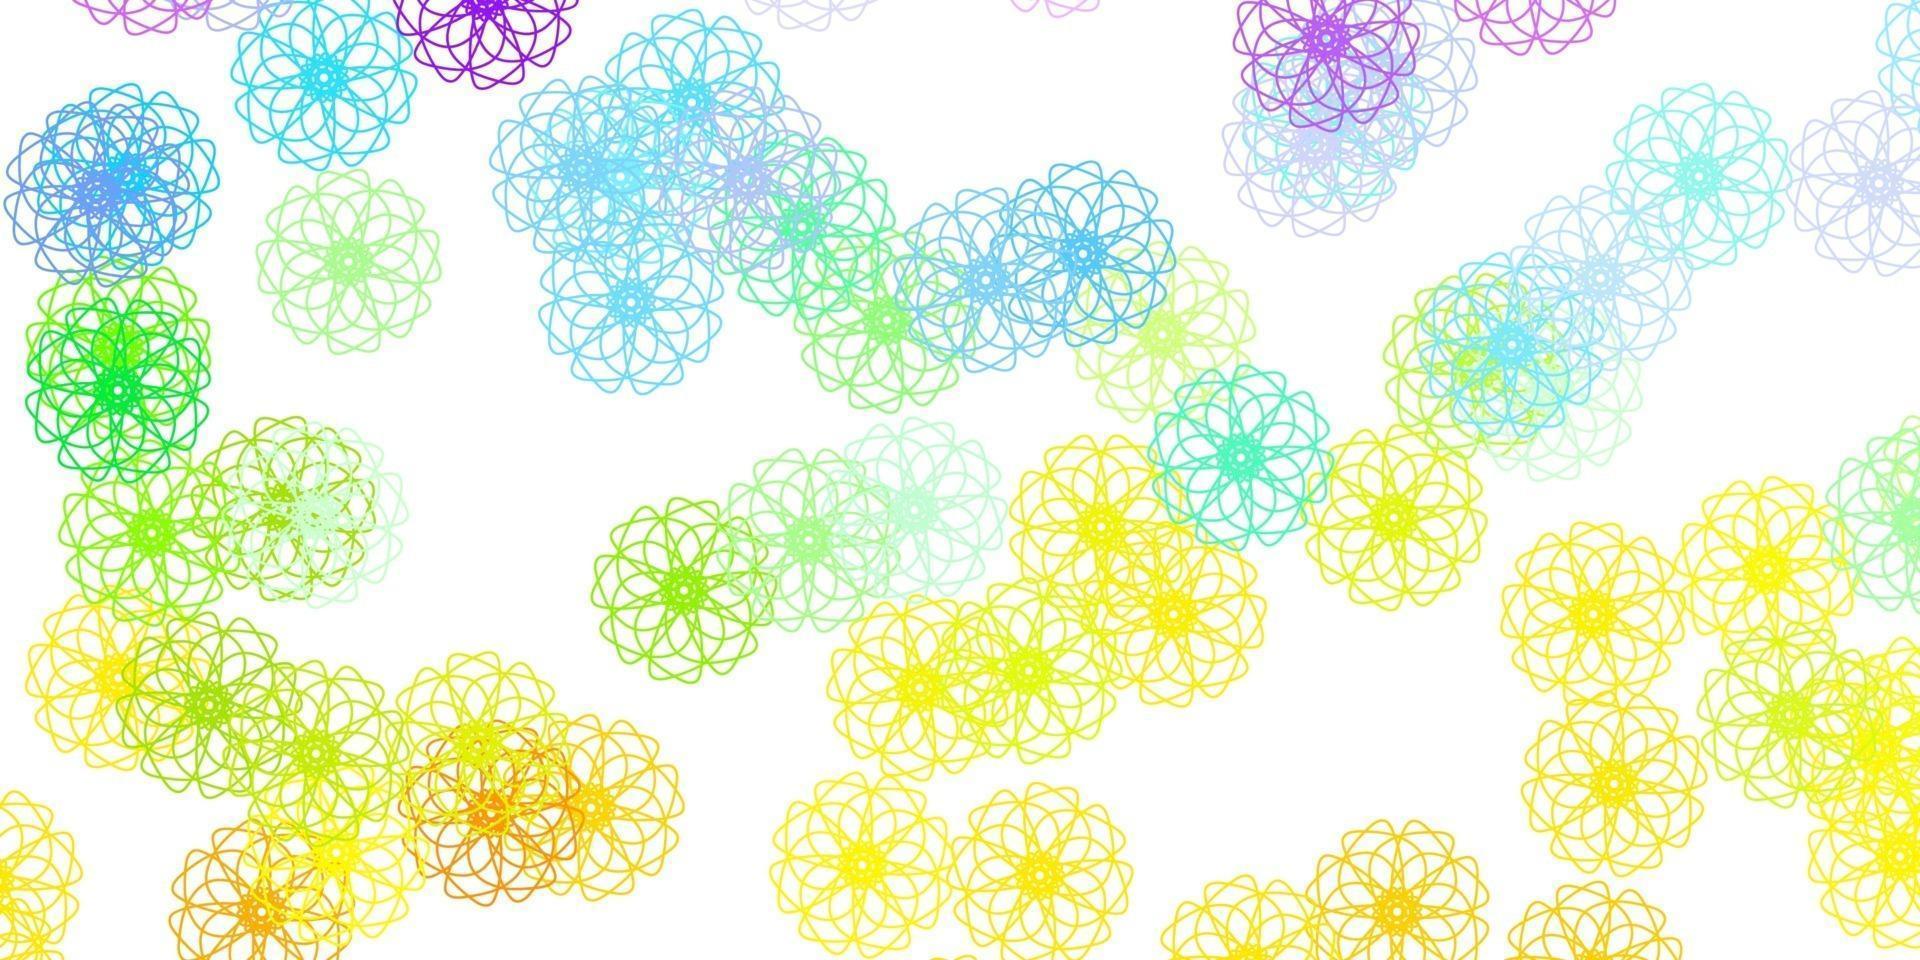 lichtpaars, roze vector doodle textuur met bloemen.